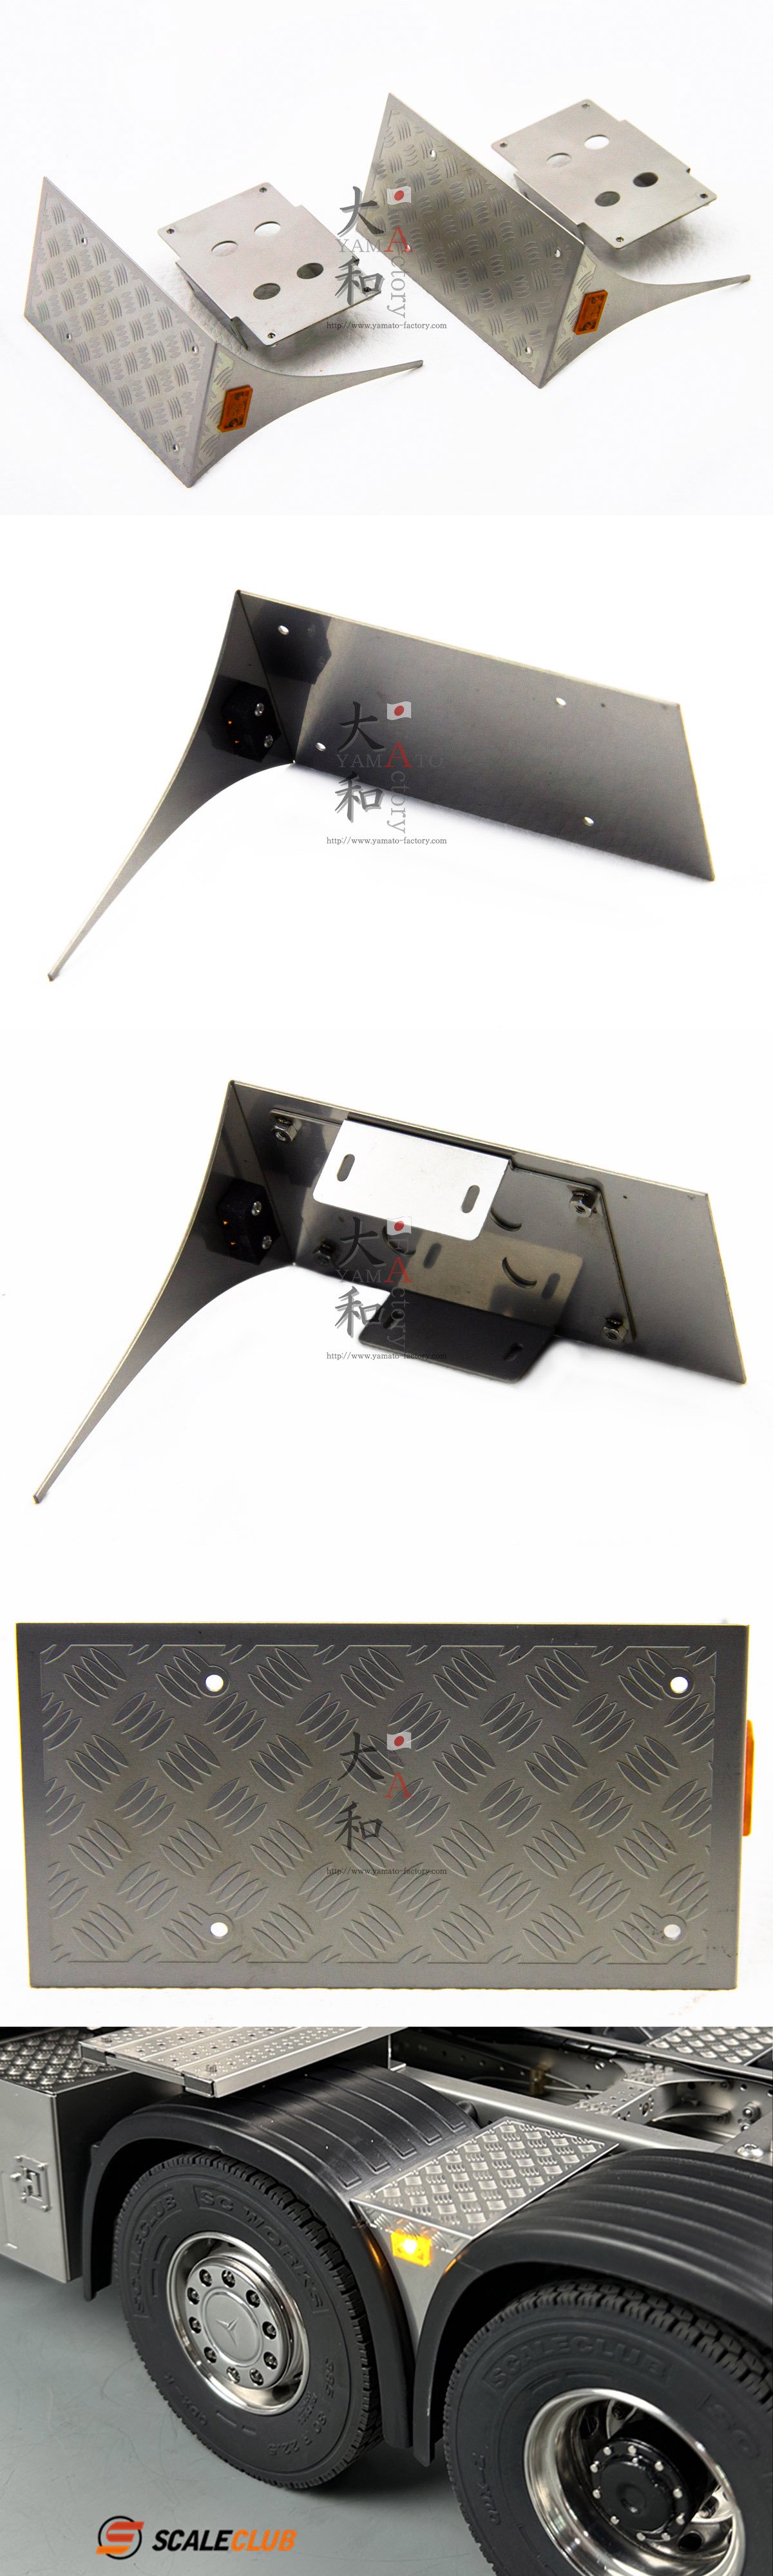 タミヤ1/142軸汎用マーカー付きステンレス縞板鋼板リアフェンダーカバー